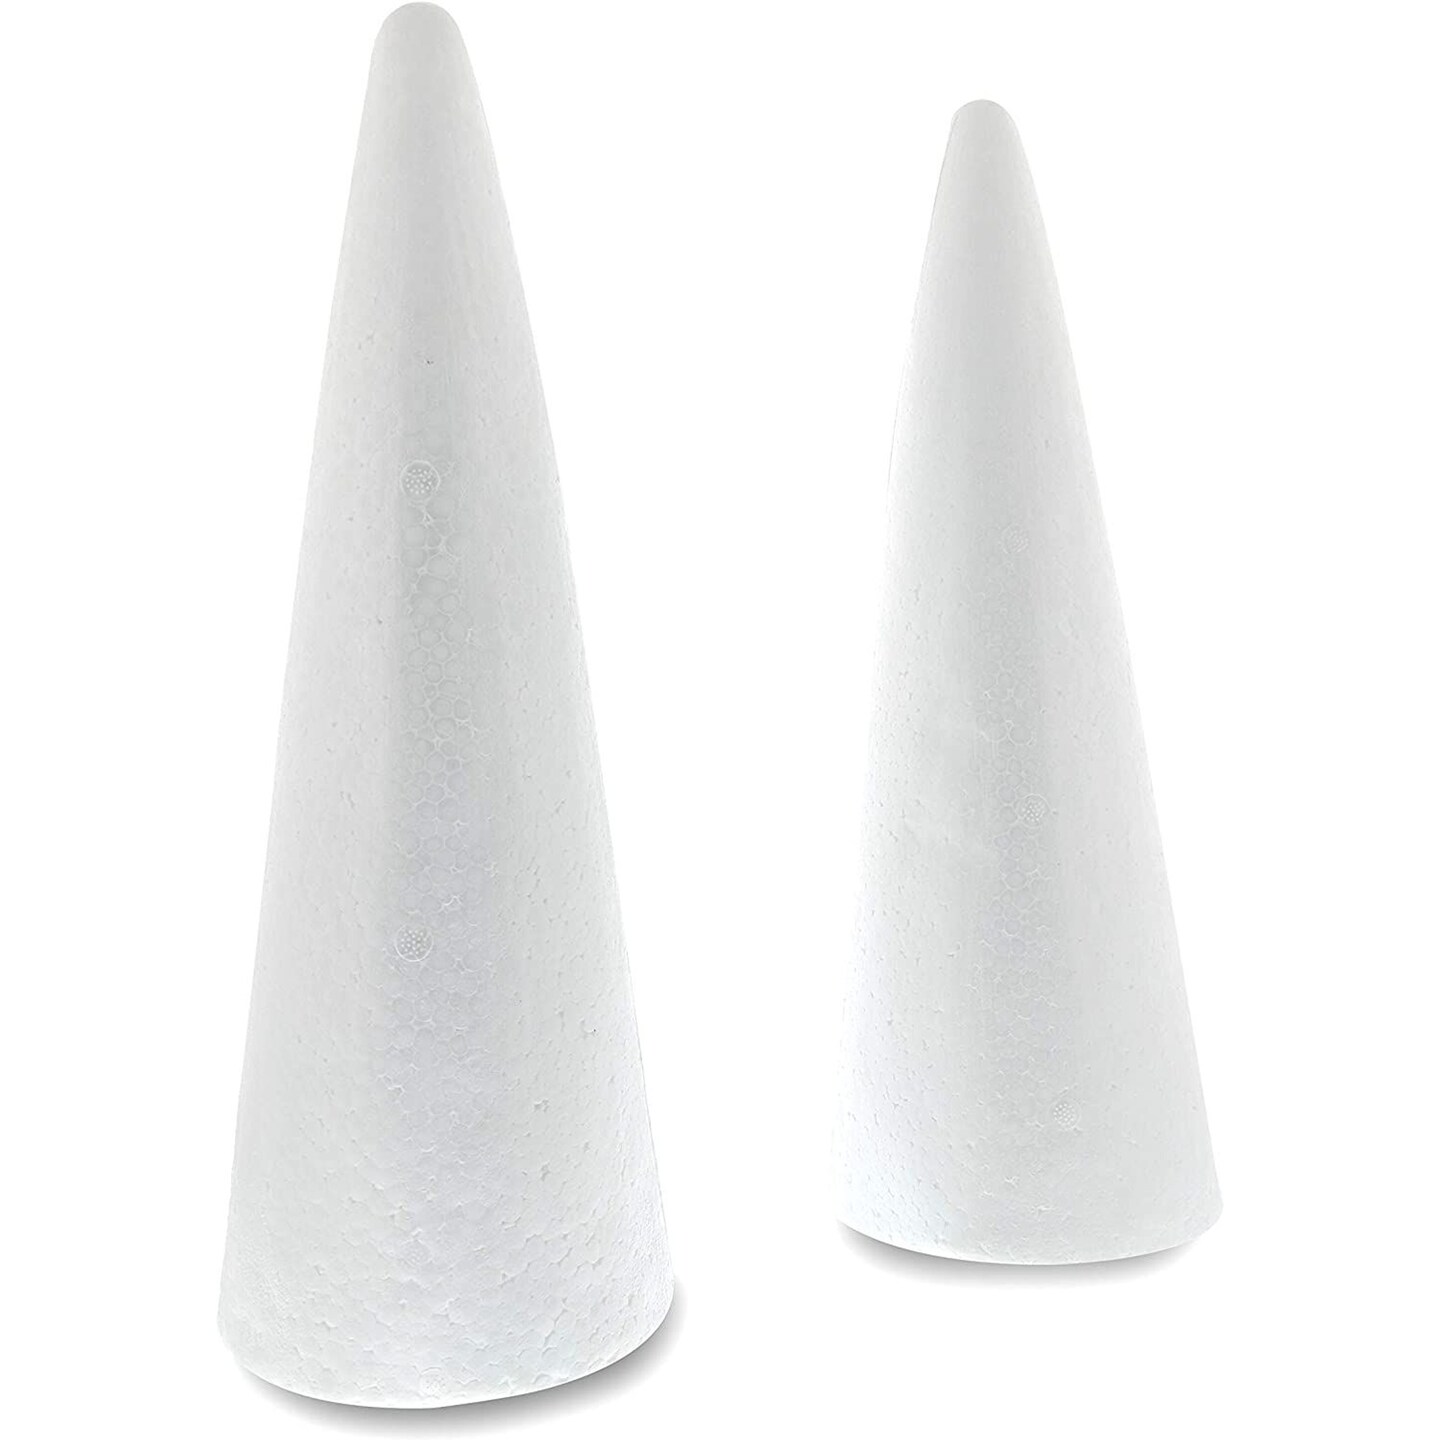  Foam Cones For Crafts